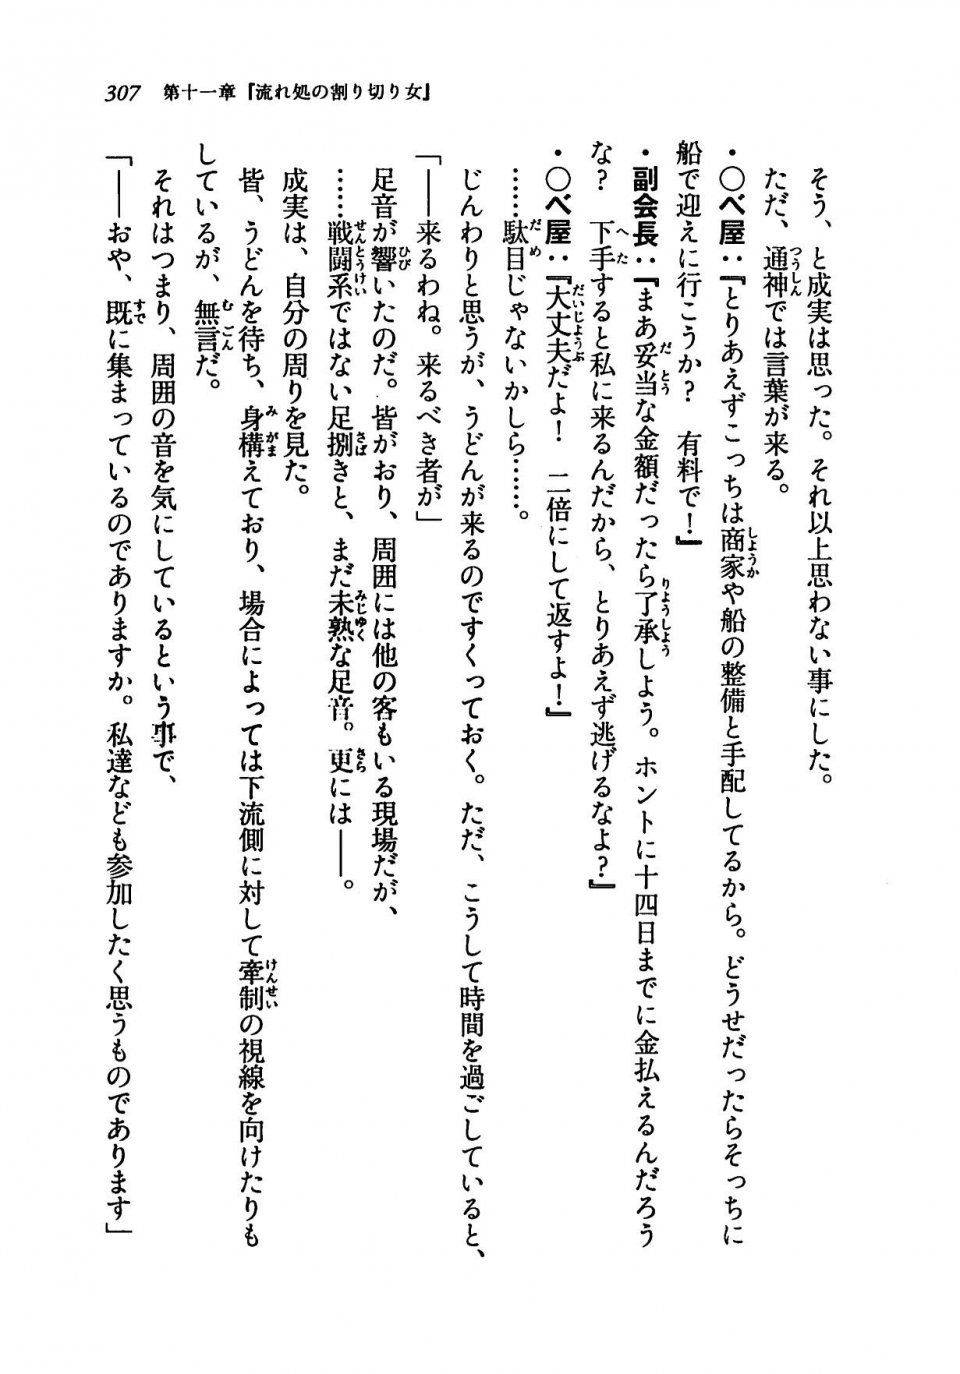 Kyoukai Senjou no Horizon LN Vol 19(8A) - Photo #307